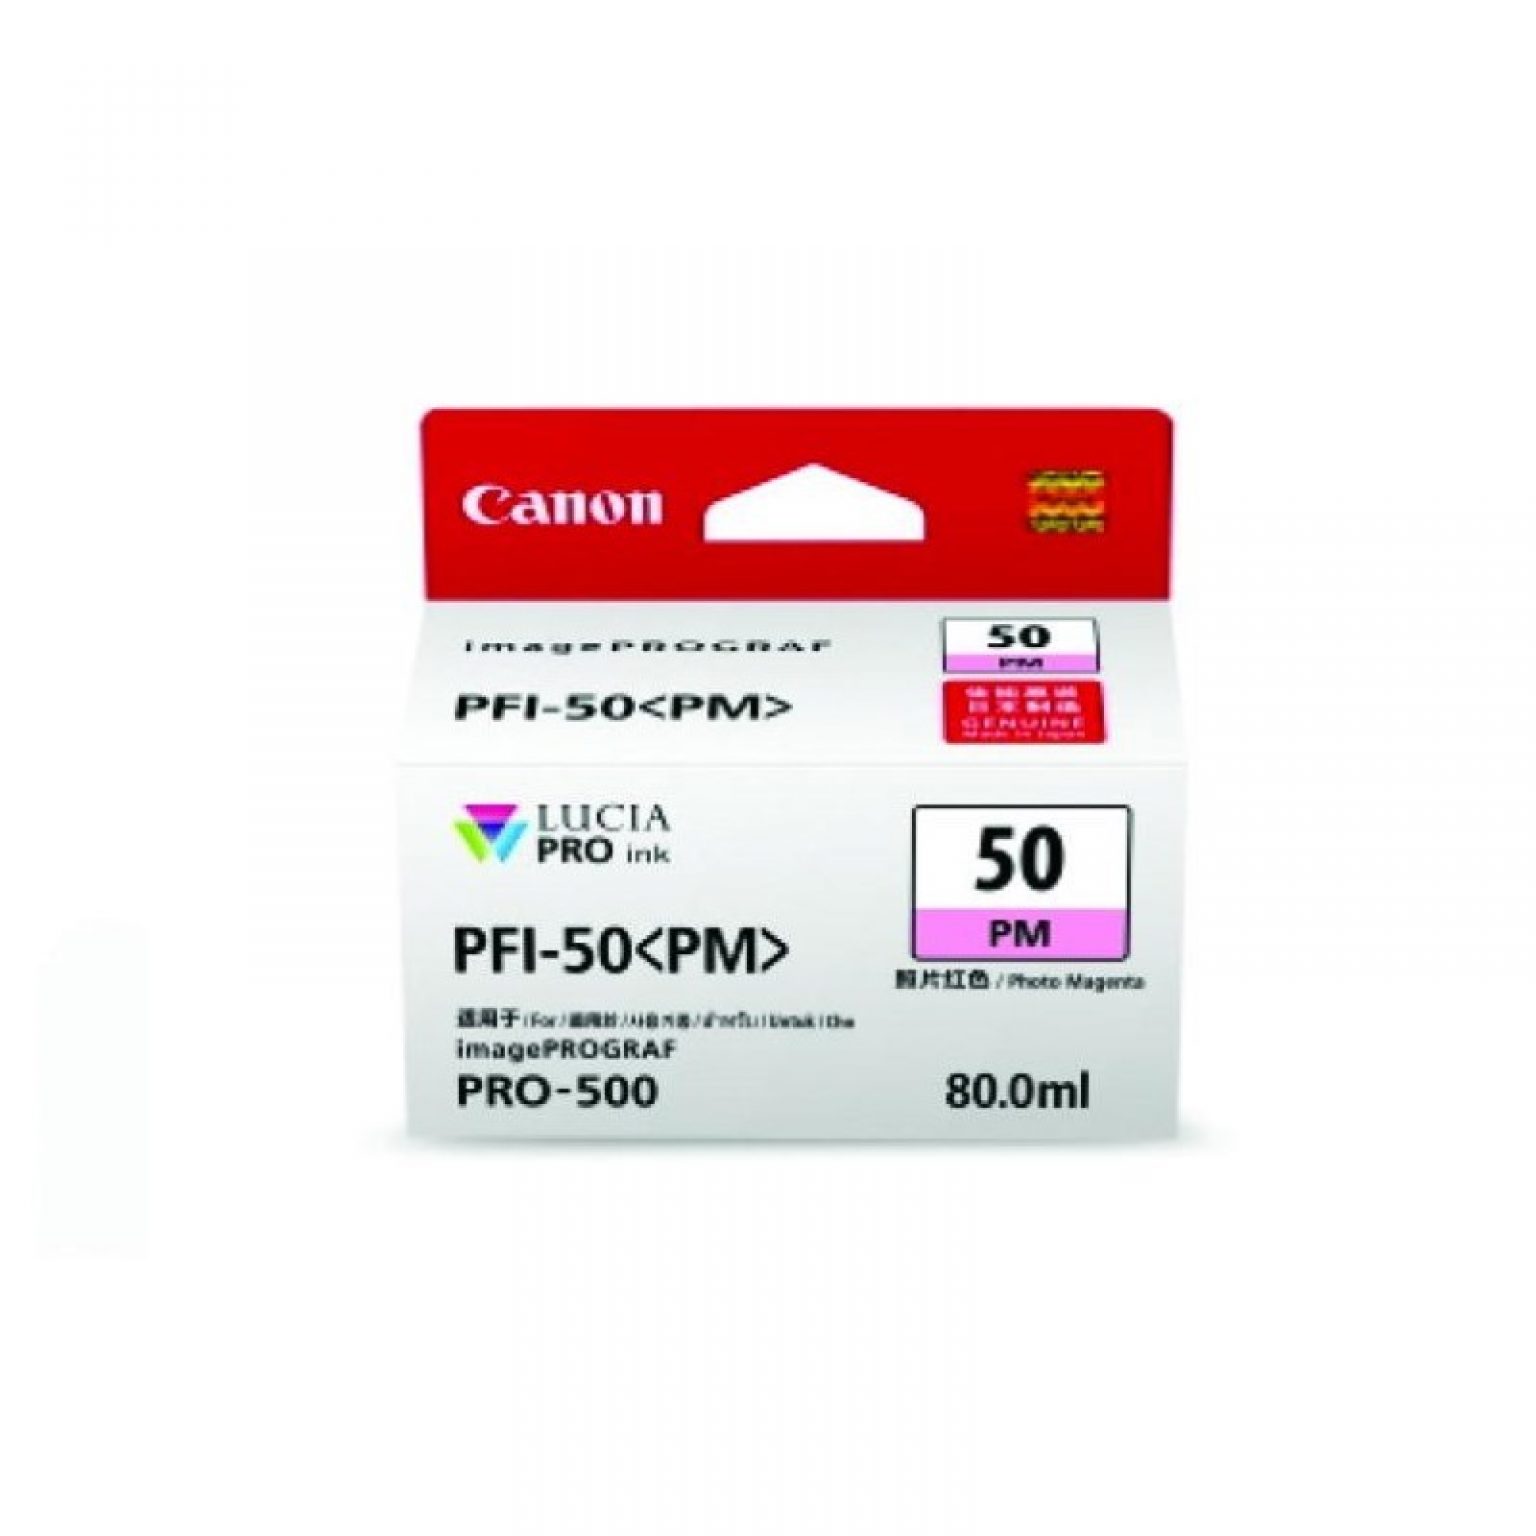 CANON - Ink PFI-50 Photo Magenta for Pro500 [PFI-50PM]